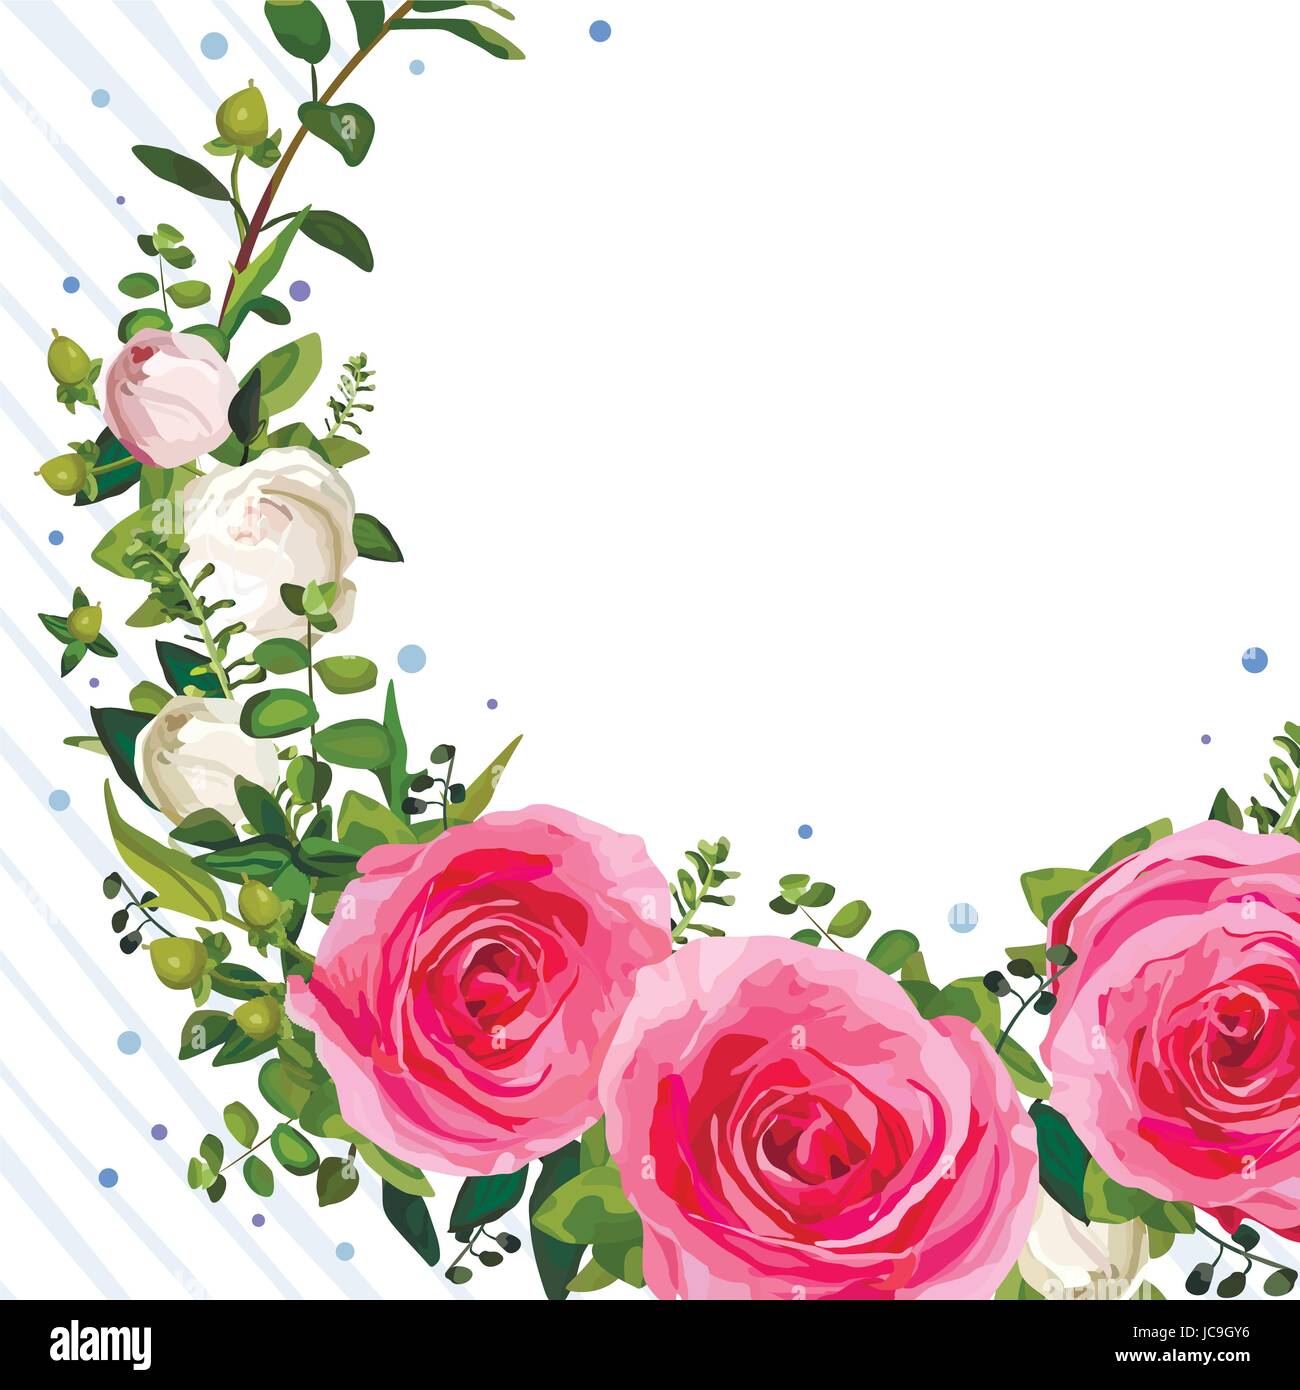 Kranz Blume rosa Rose lässt schöne schönen Frühling Sommer Bouquet Vektor-Illustration. Ansicht von oben Quadrat feine elegante Aquarell Design weiß Stock Vektor